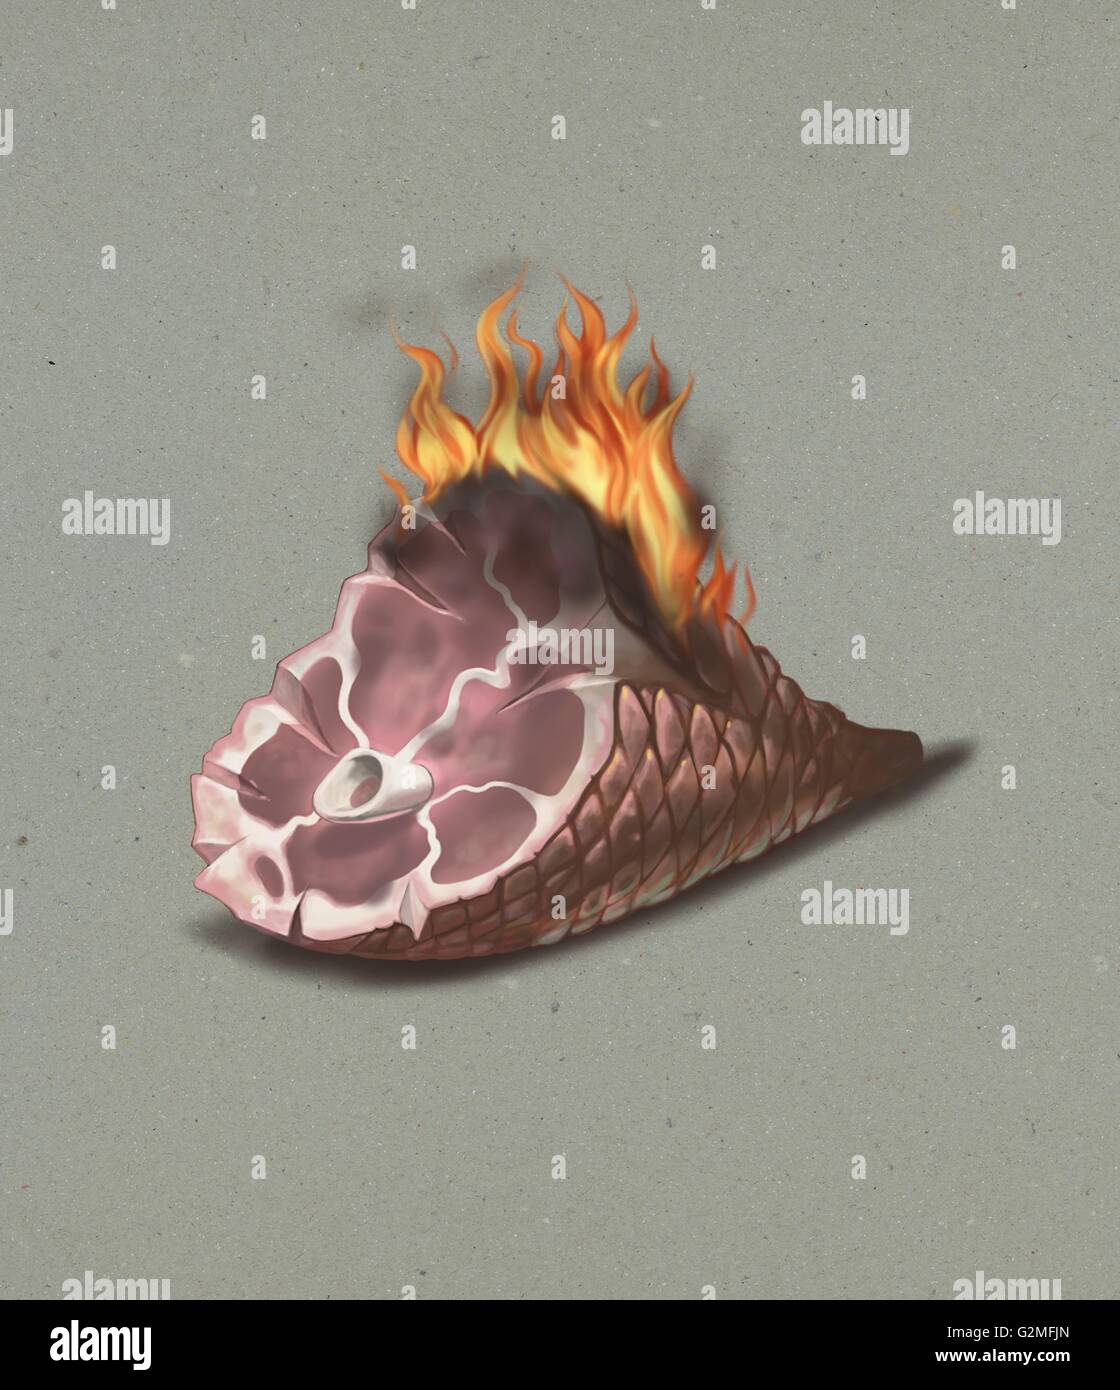 Burning ham on grey background Stock Photo: 104942845 - Alamy